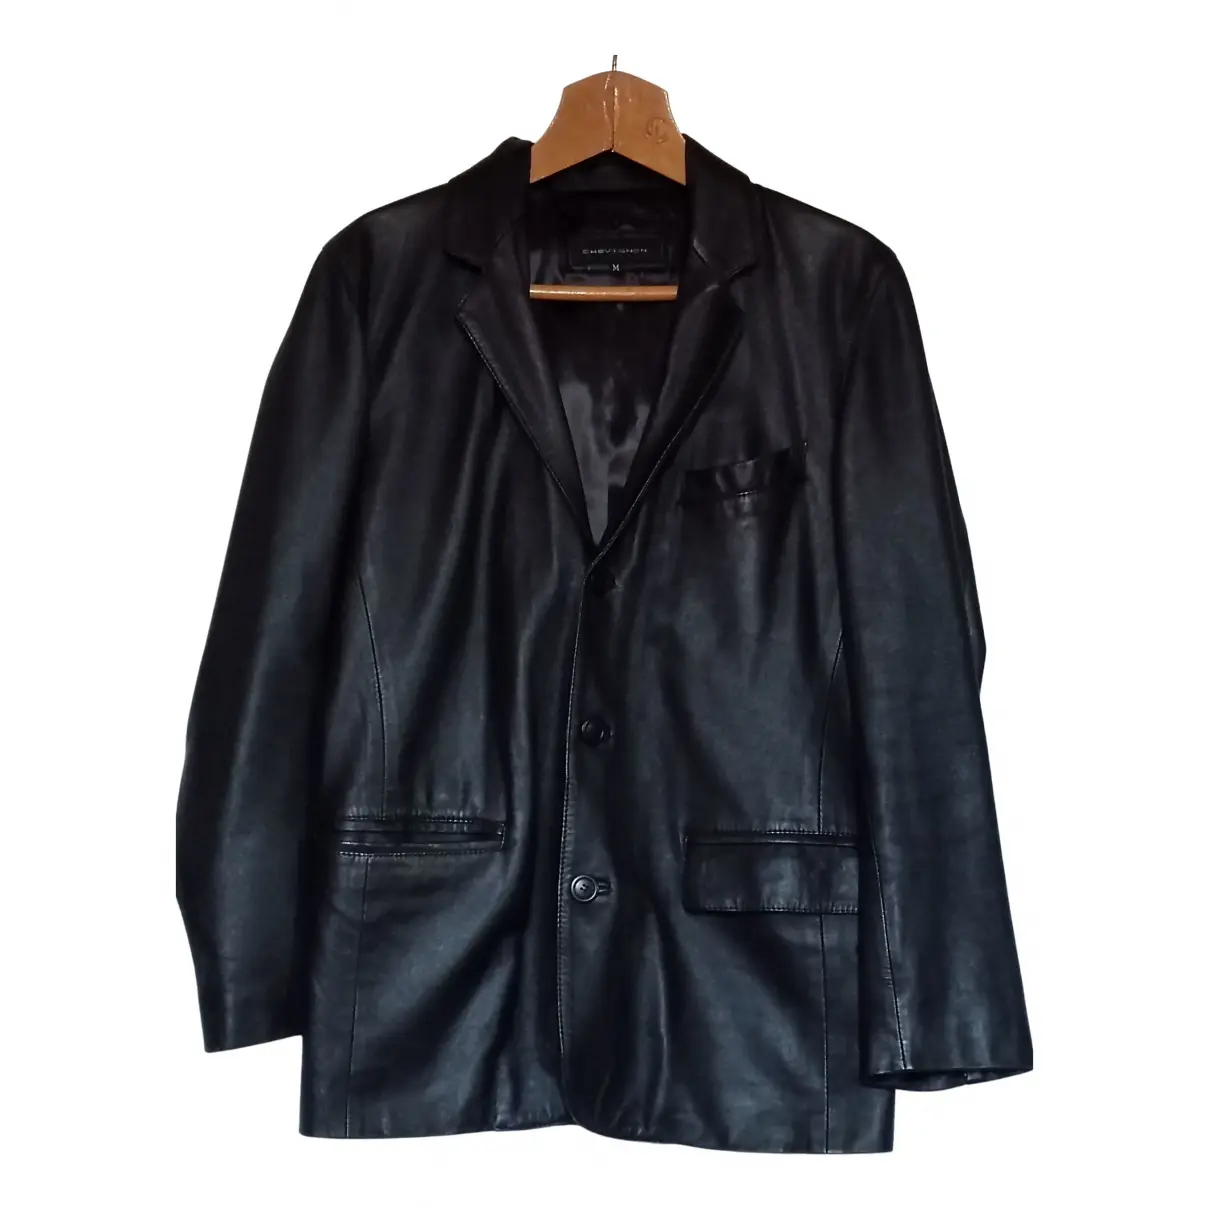 Leather jacket Chevignon